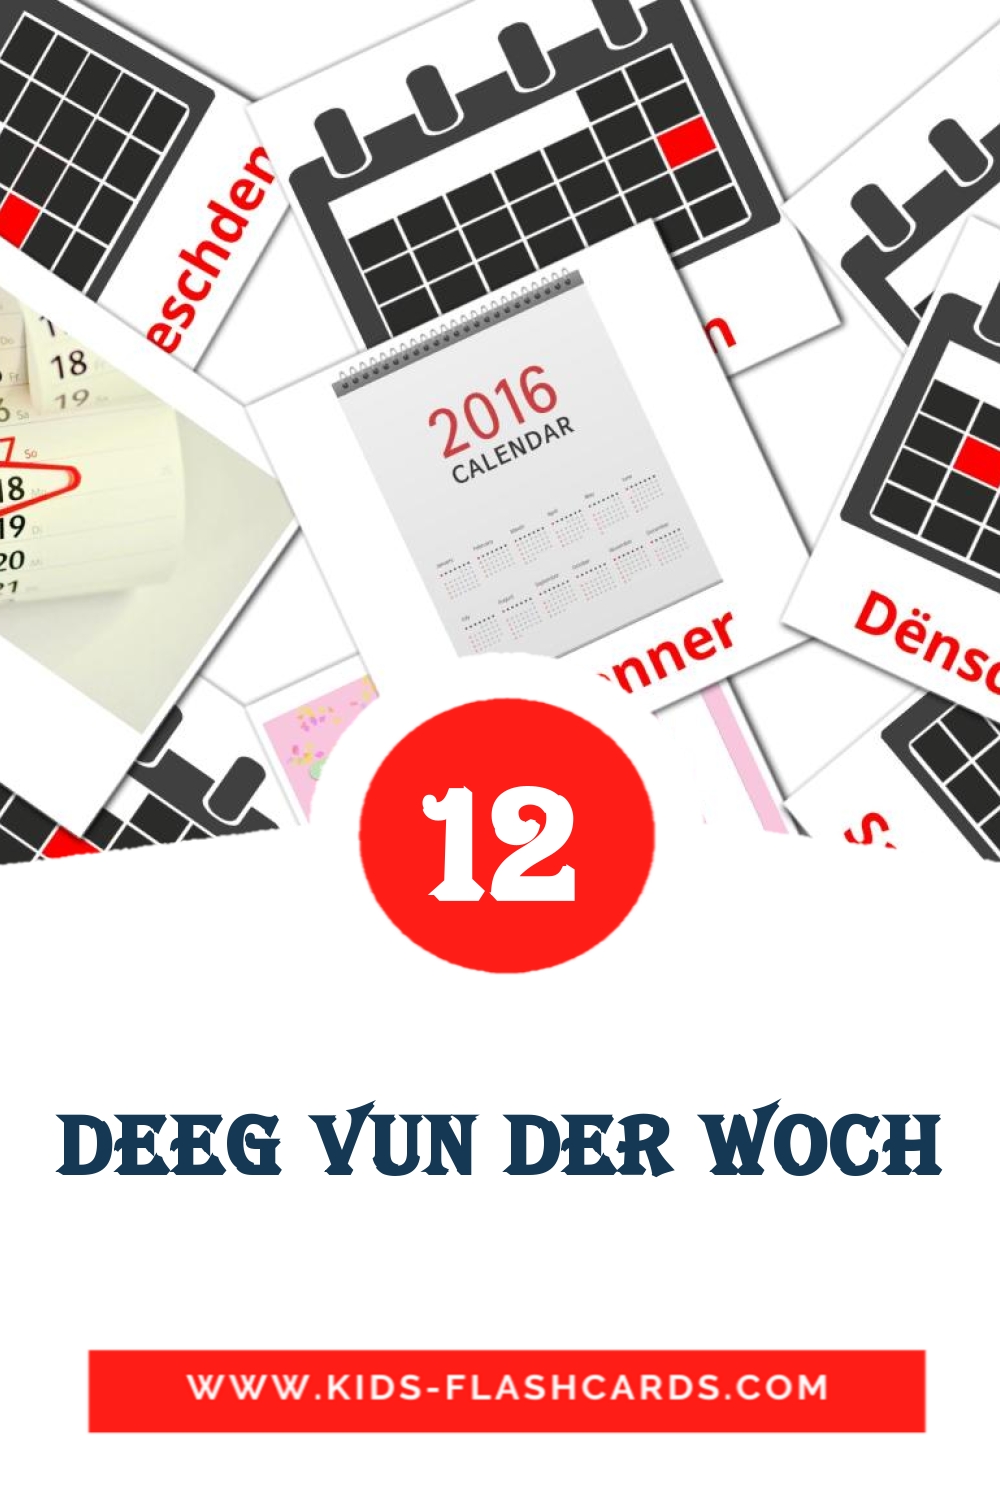 12 Cartões com Imagens de Deeg vun der Woch para Jardim de Infância em luxemburguês